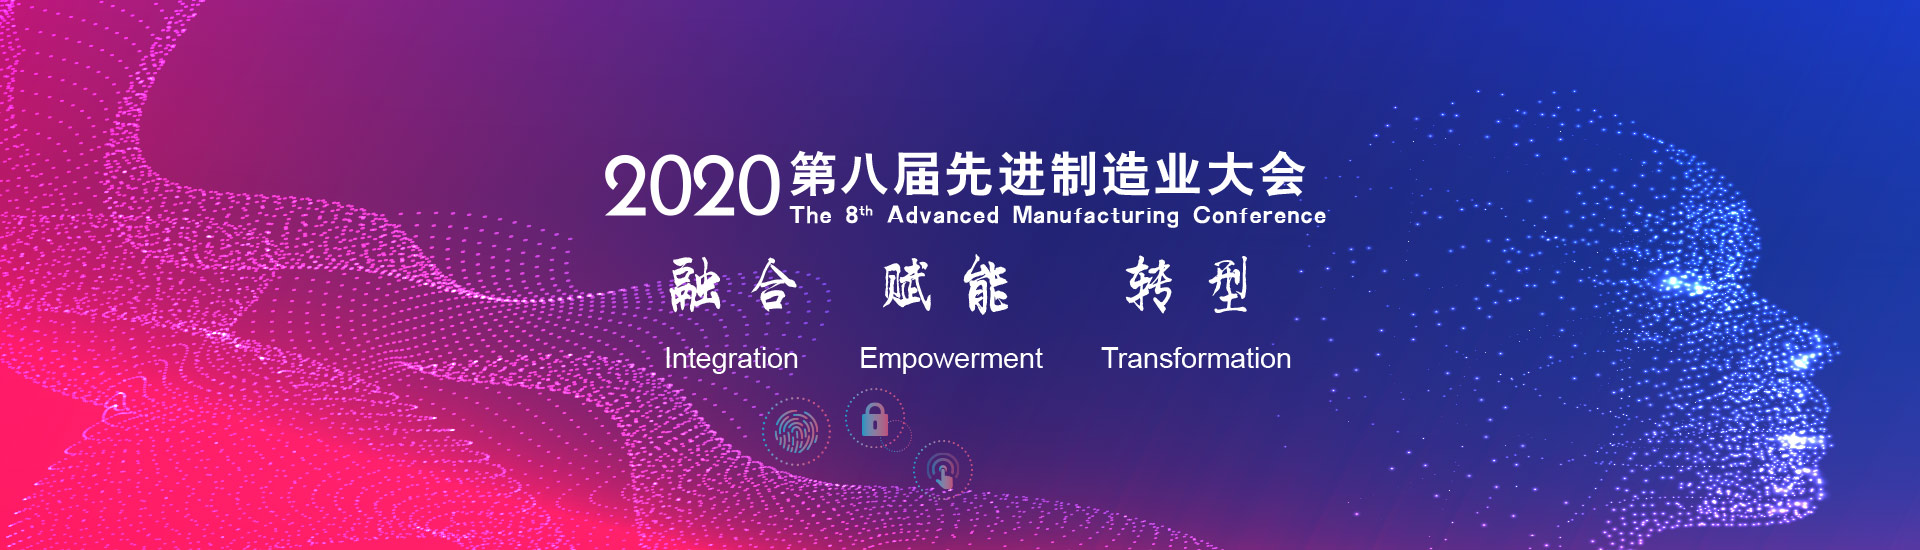 2021*八届中国上海地下空间开发大会